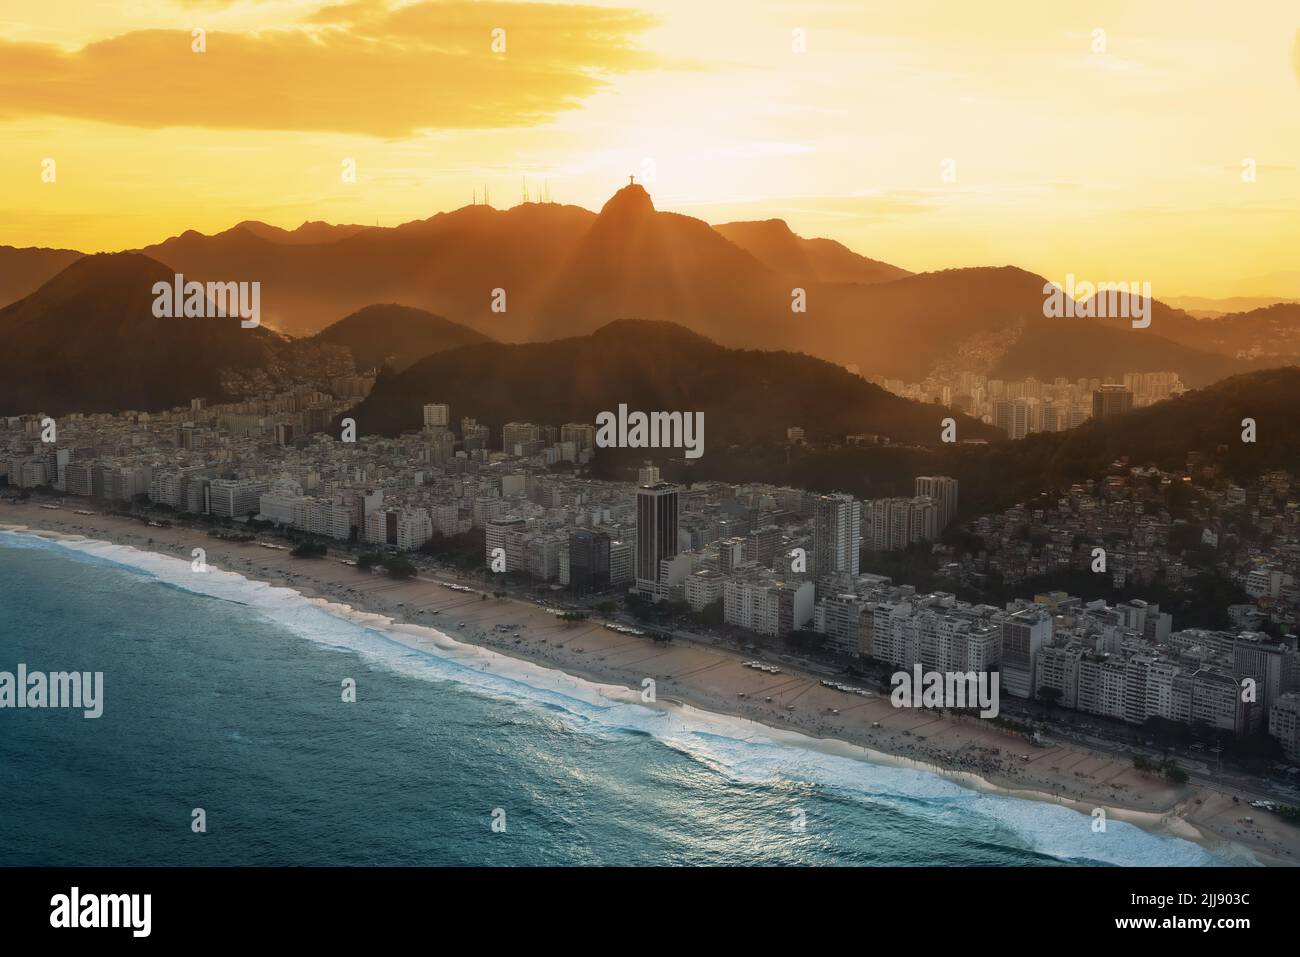 Vue aérienne de Copacabana au coucher du soleil avec la montagne Corcovado - Rio de Janeiro, Brésil Banque D'Images